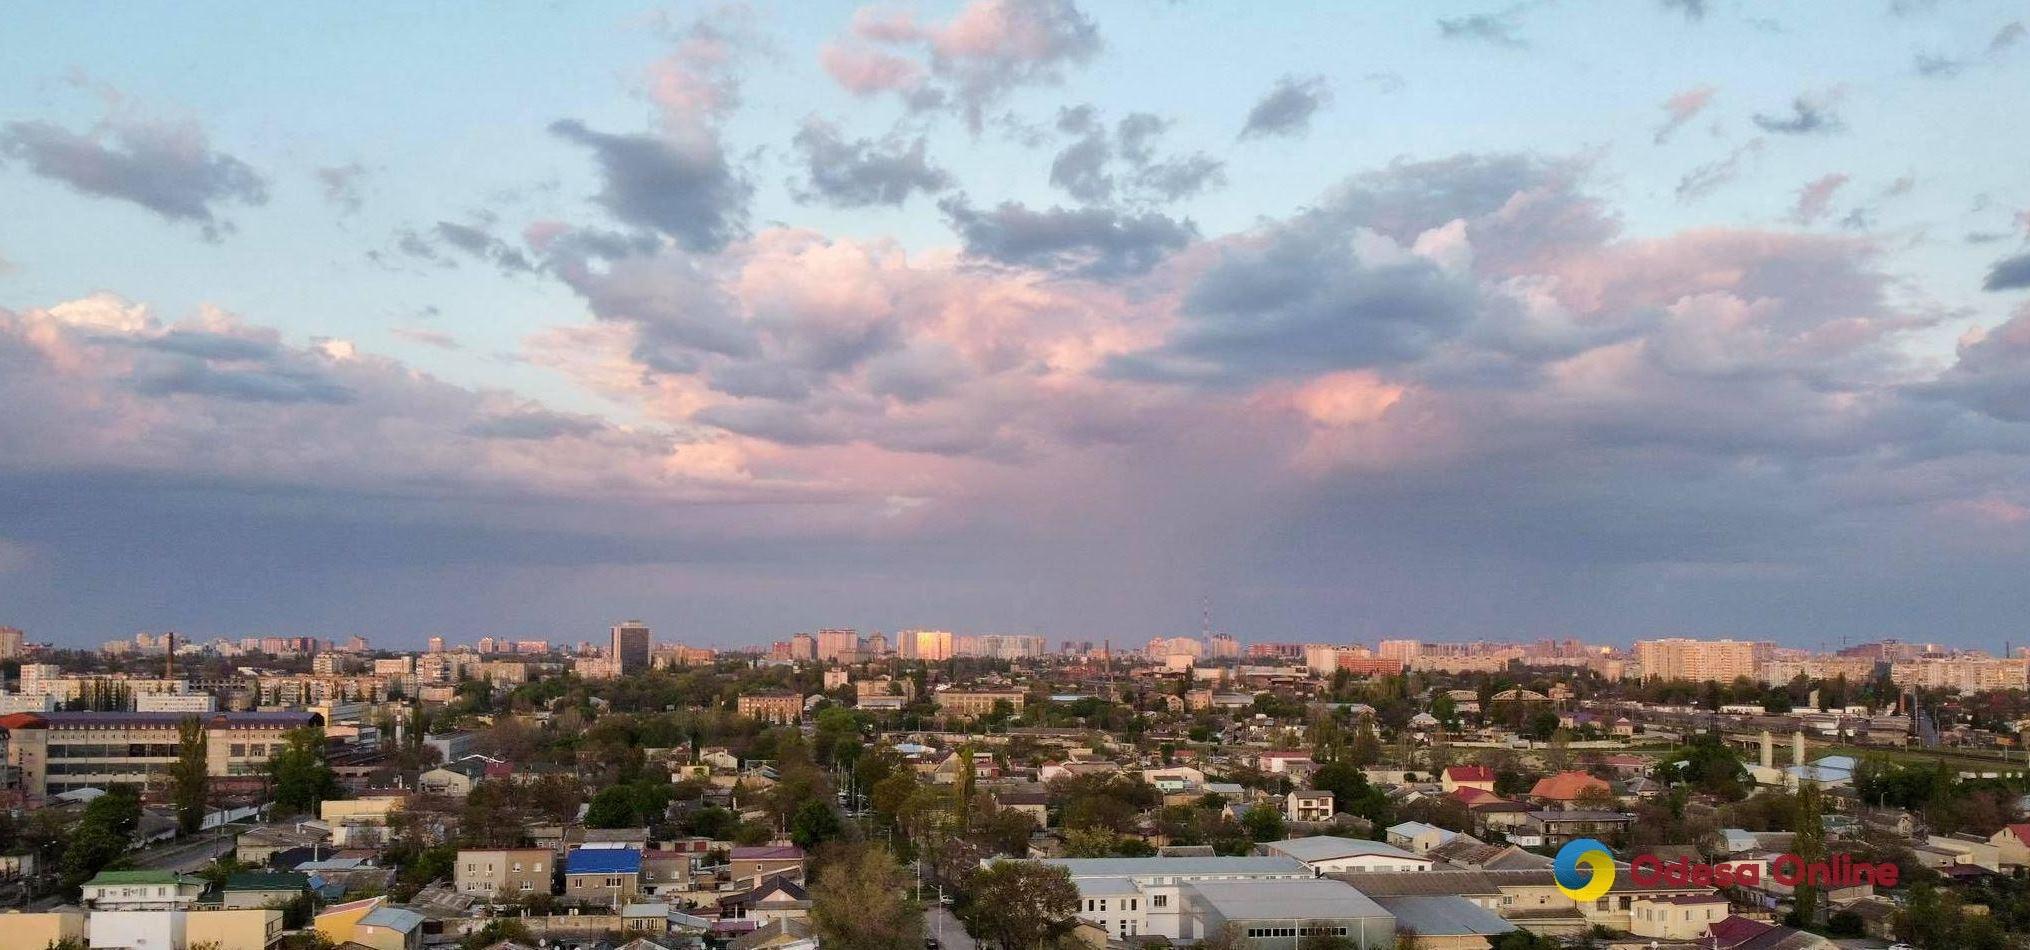 Одесса вошла в тройку городов Украины с самым загрязненным воздухом